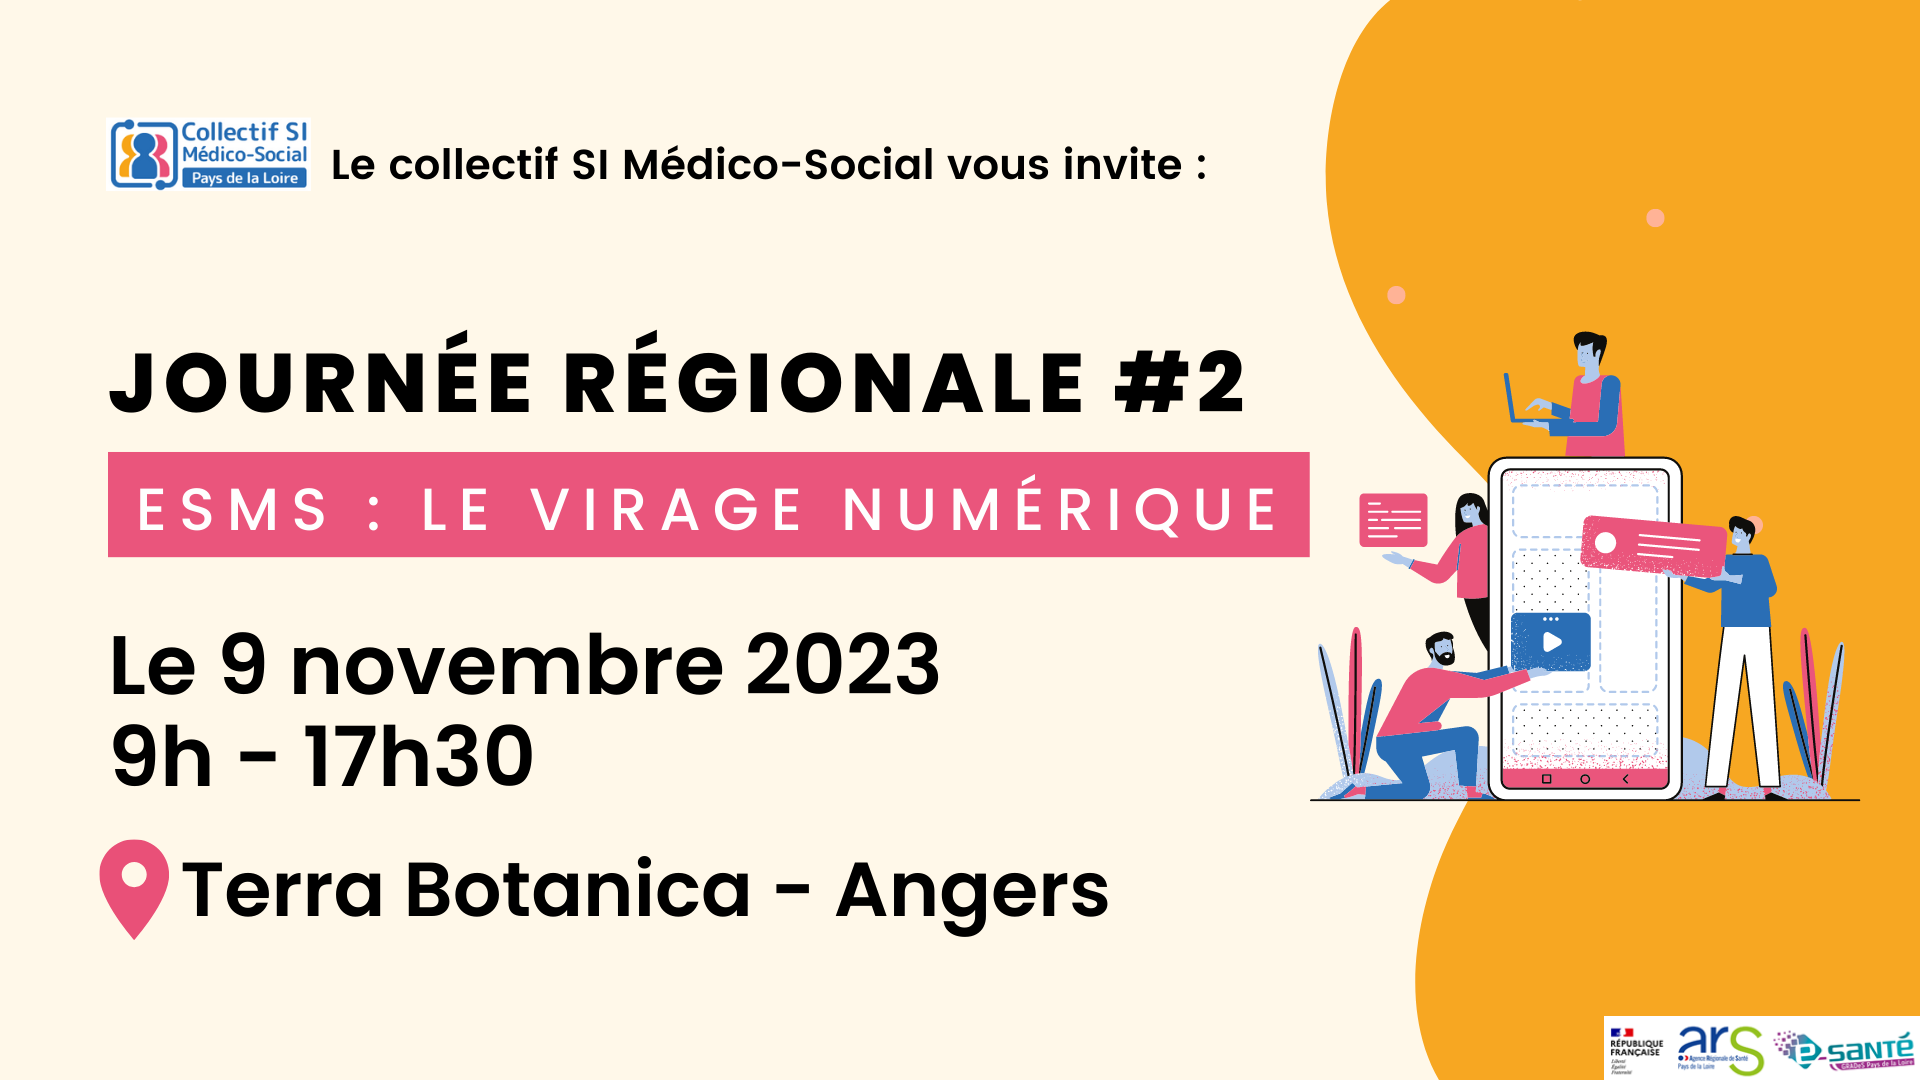 Journée régionale "ESMS - Le virage numérique"  le 9 novembre à Angers !